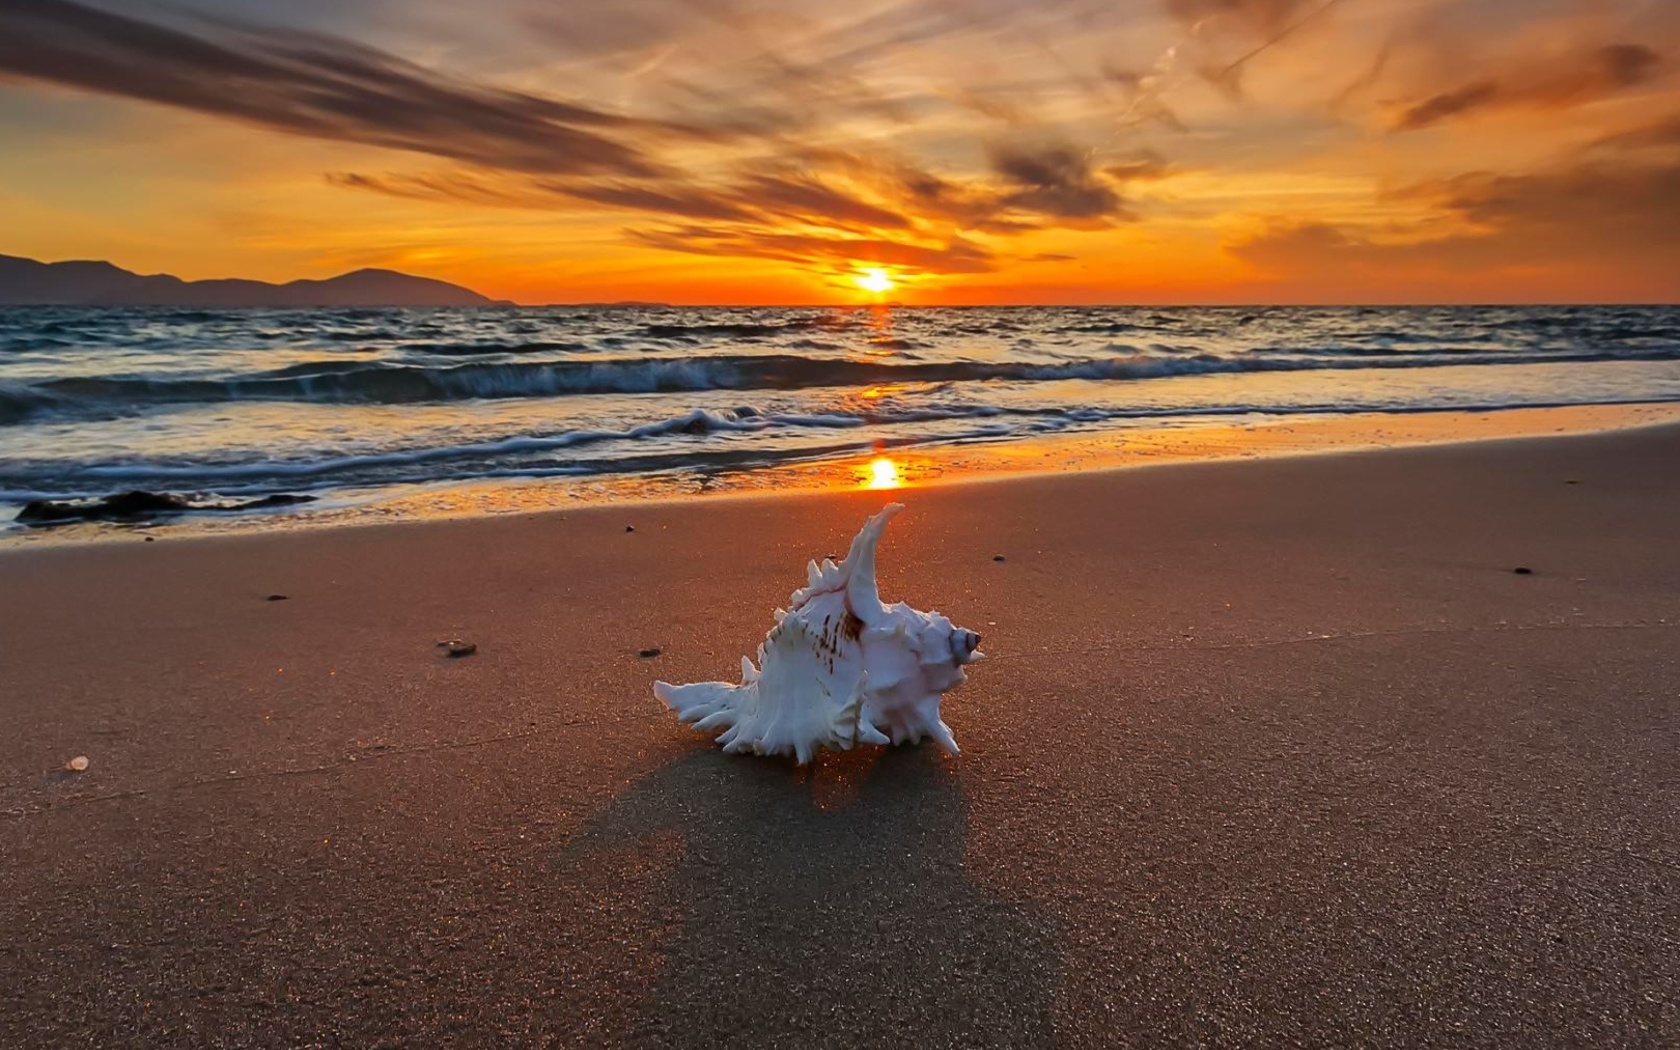 Обои Sunset on Beach with Shell 1680x1050